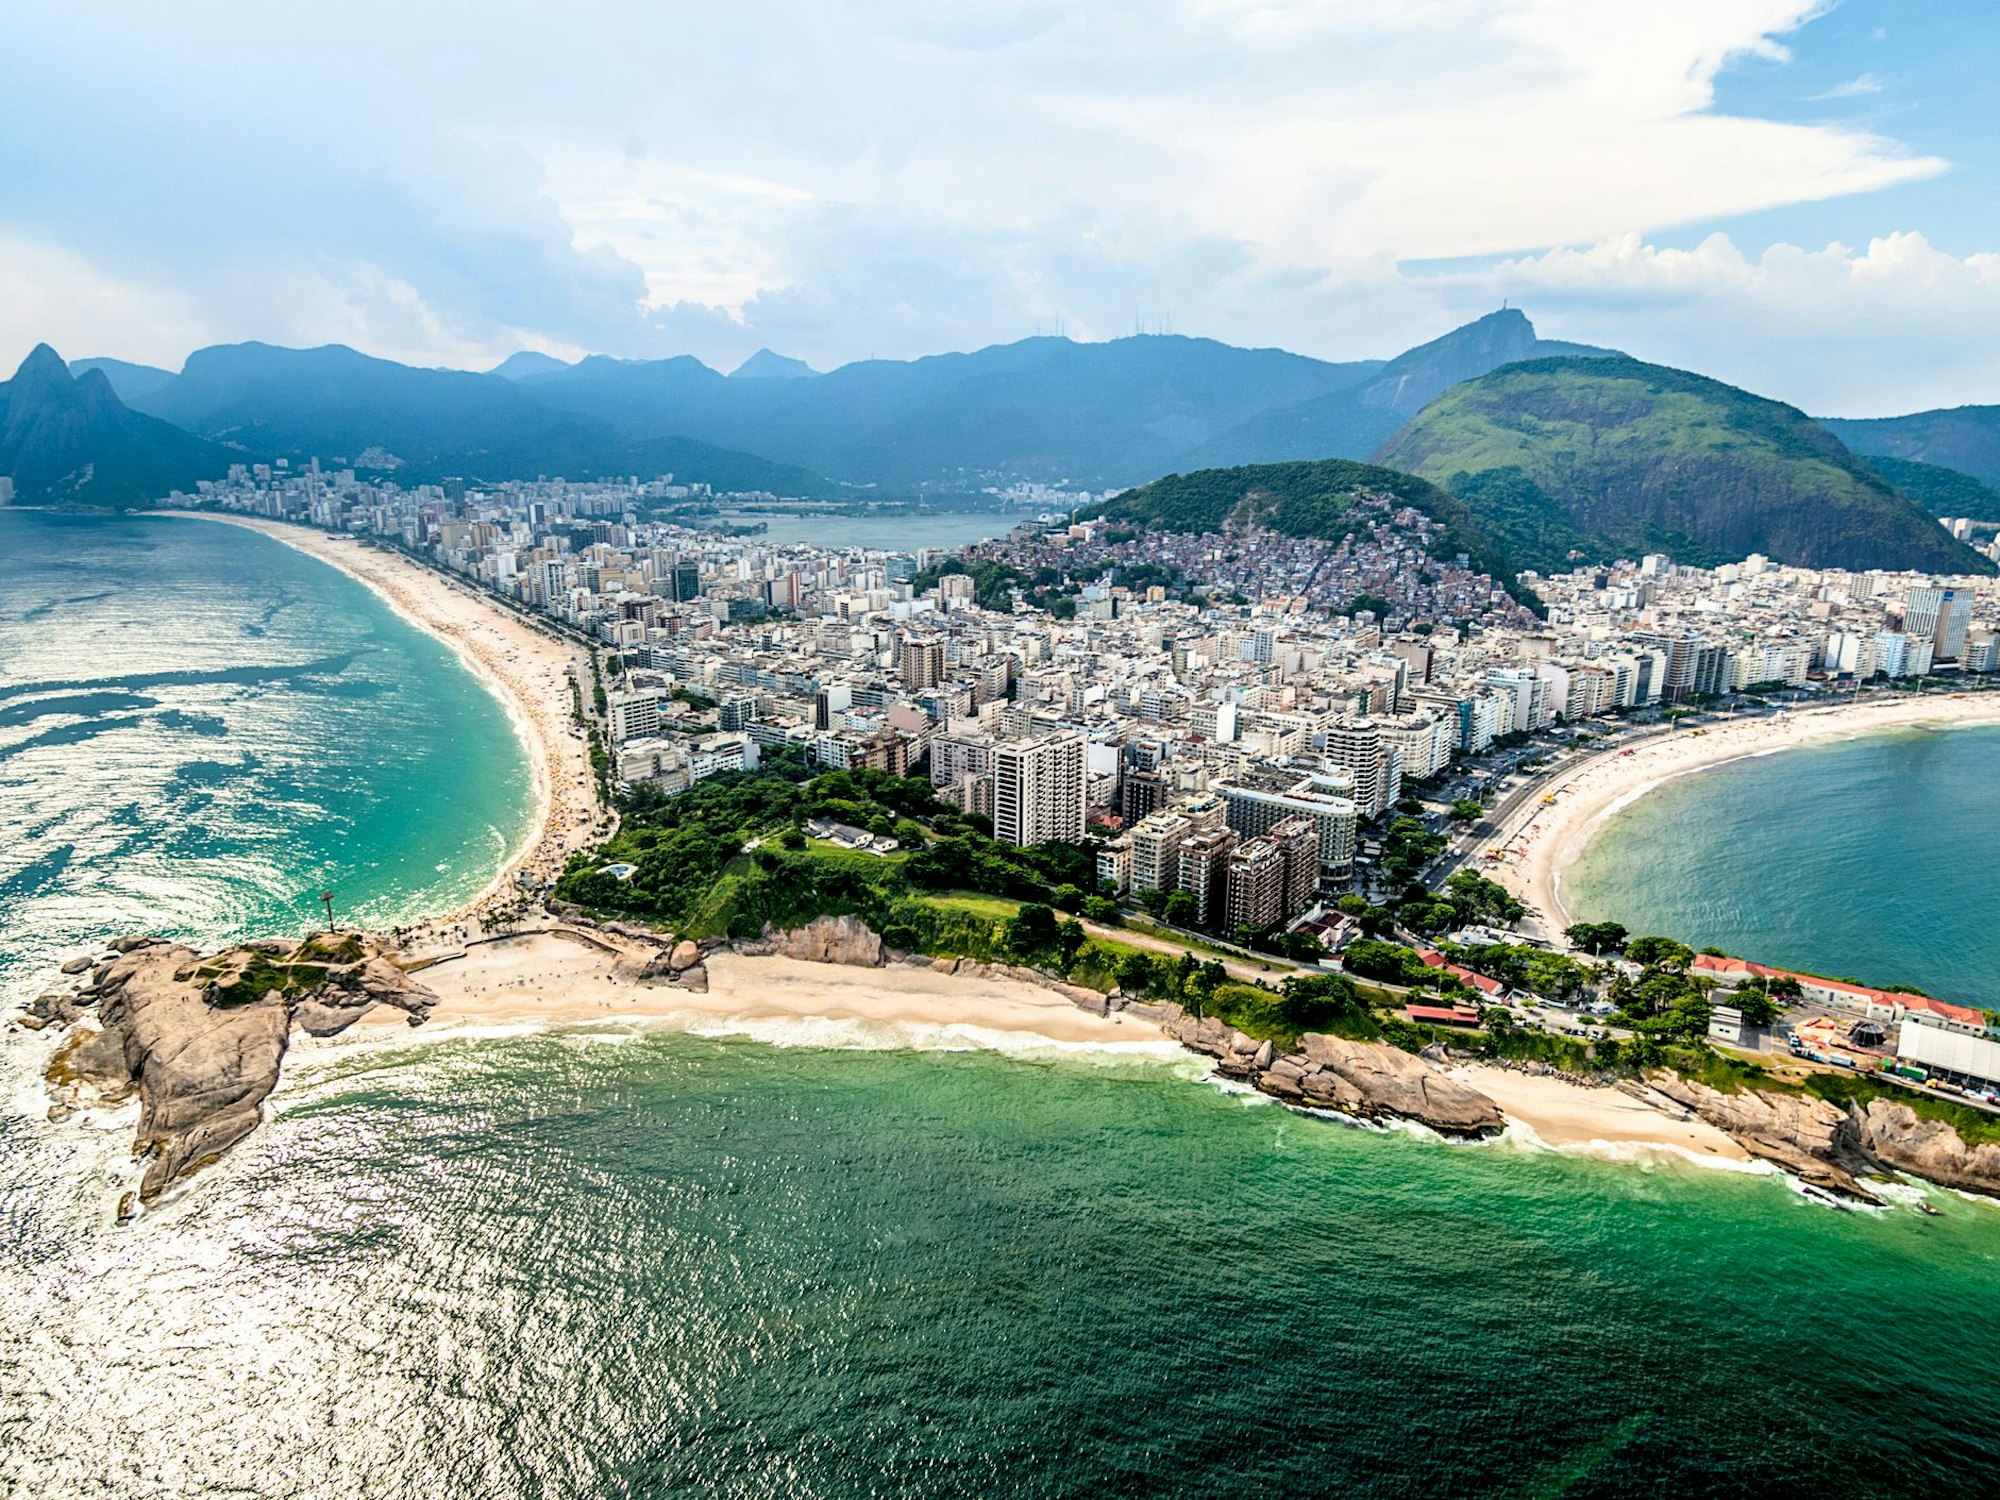 Ipanema, Arpoador und Copacabana in Rio de Janeiro.